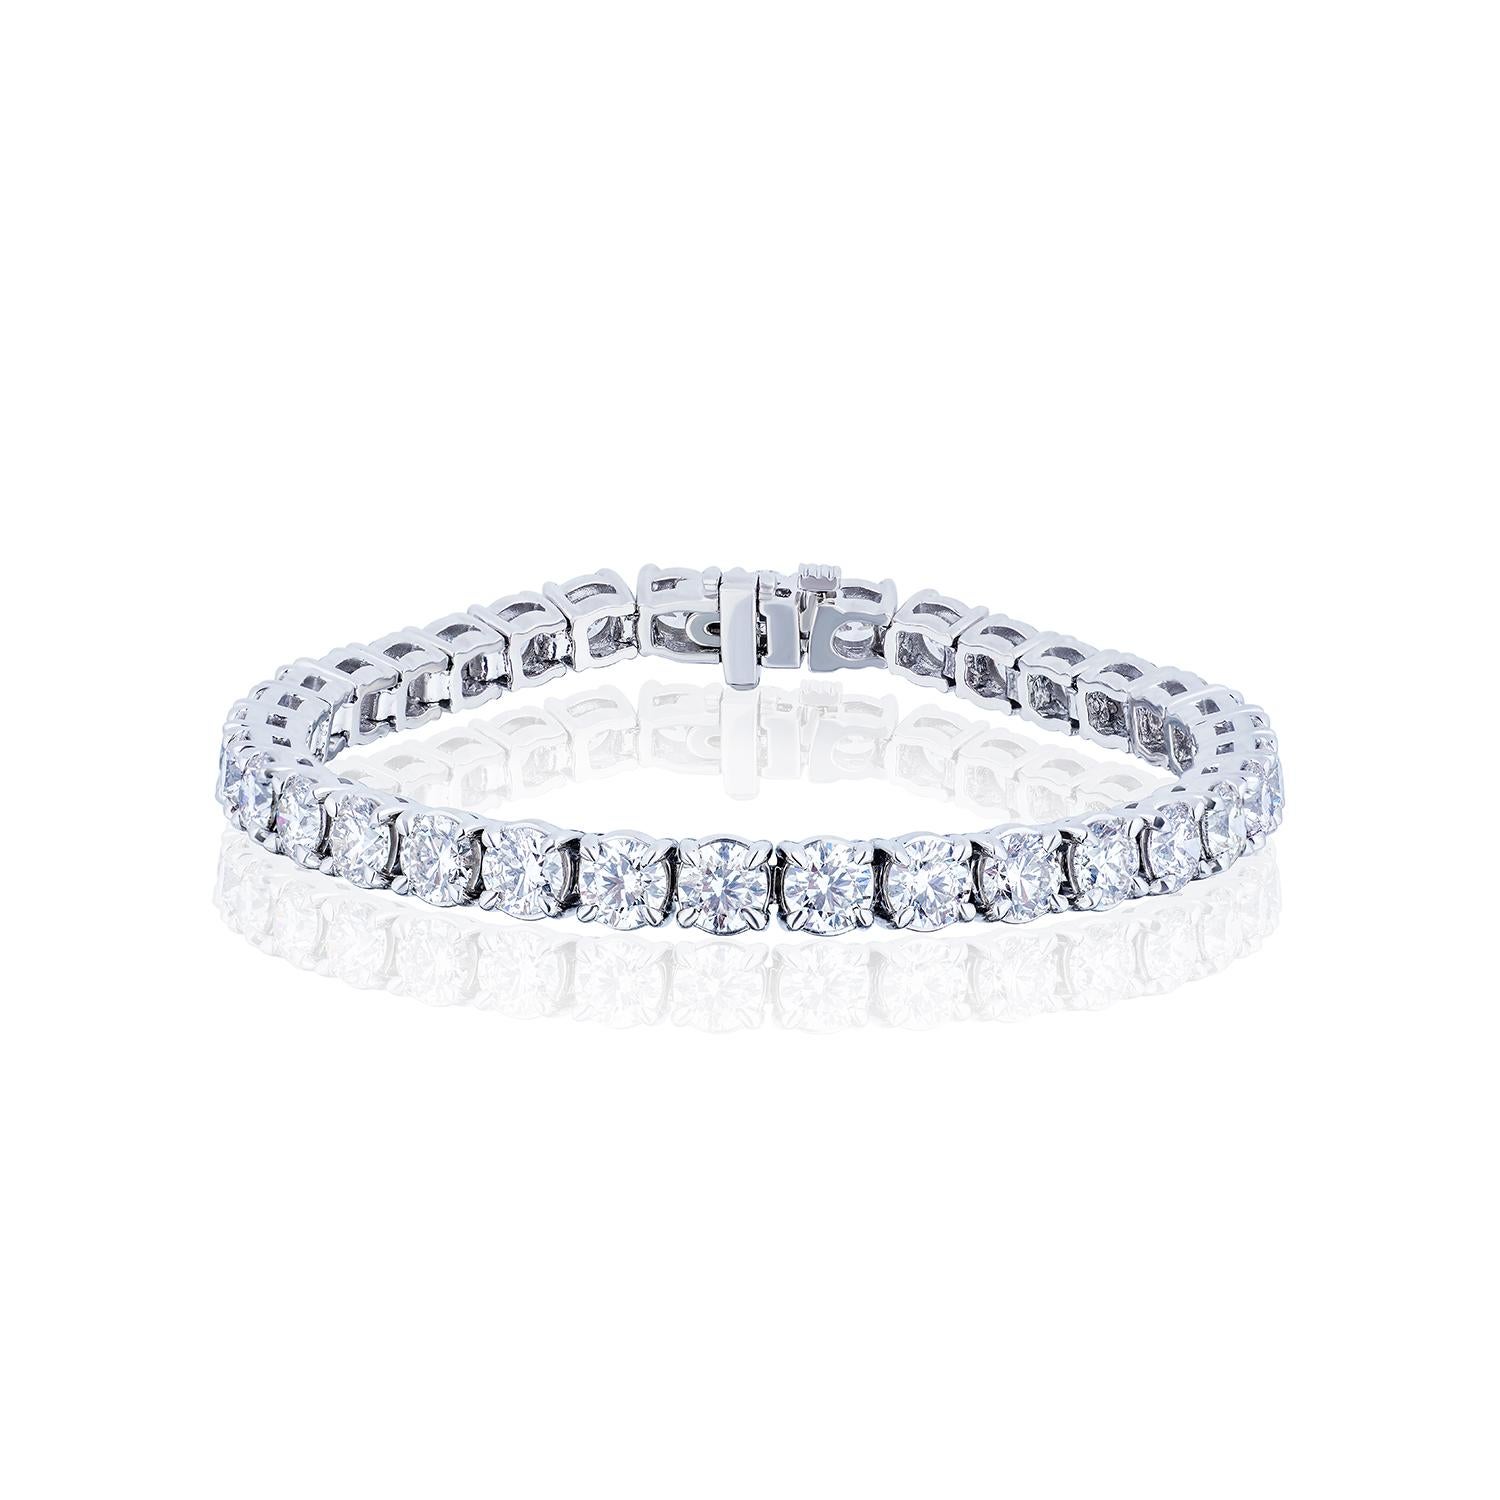 Le bracelet de tennis parfait.

34 diamants ronds brillants parfaitement assortis totalisant 14,13 carats dans un bracelet en ligne droite.
Les diamants sont de couleur H-I et de pureté VS.
En platine.
7 pouces.